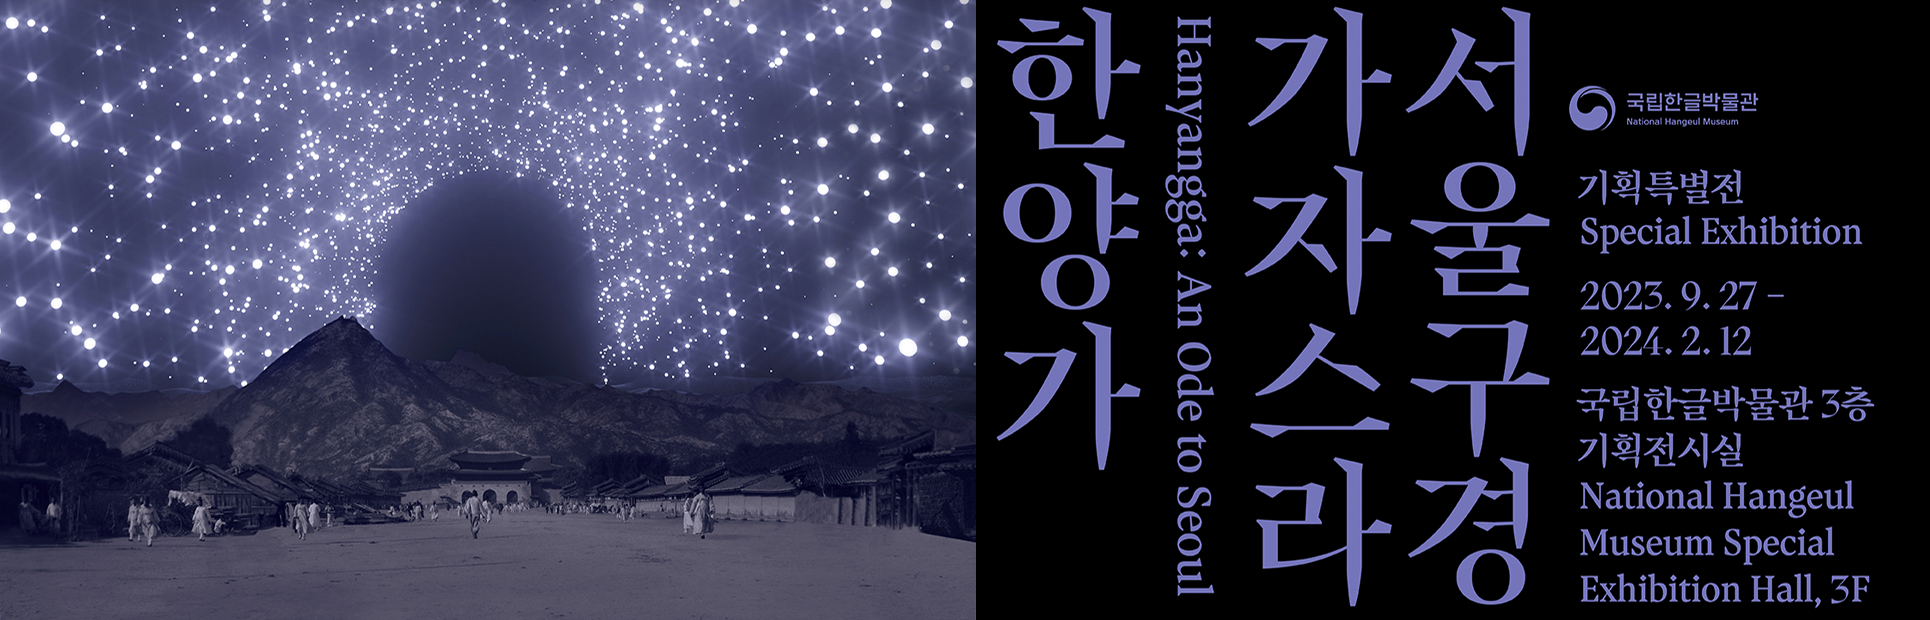 2023년 기획특별전 <서울 구경 가자스라, 한양가> 포스터 사진이다. 밤하늘에 별들이 무성히 떠 있고, 산 아래에는 옛 한양의 모습과 사람들이 그려져 있다.